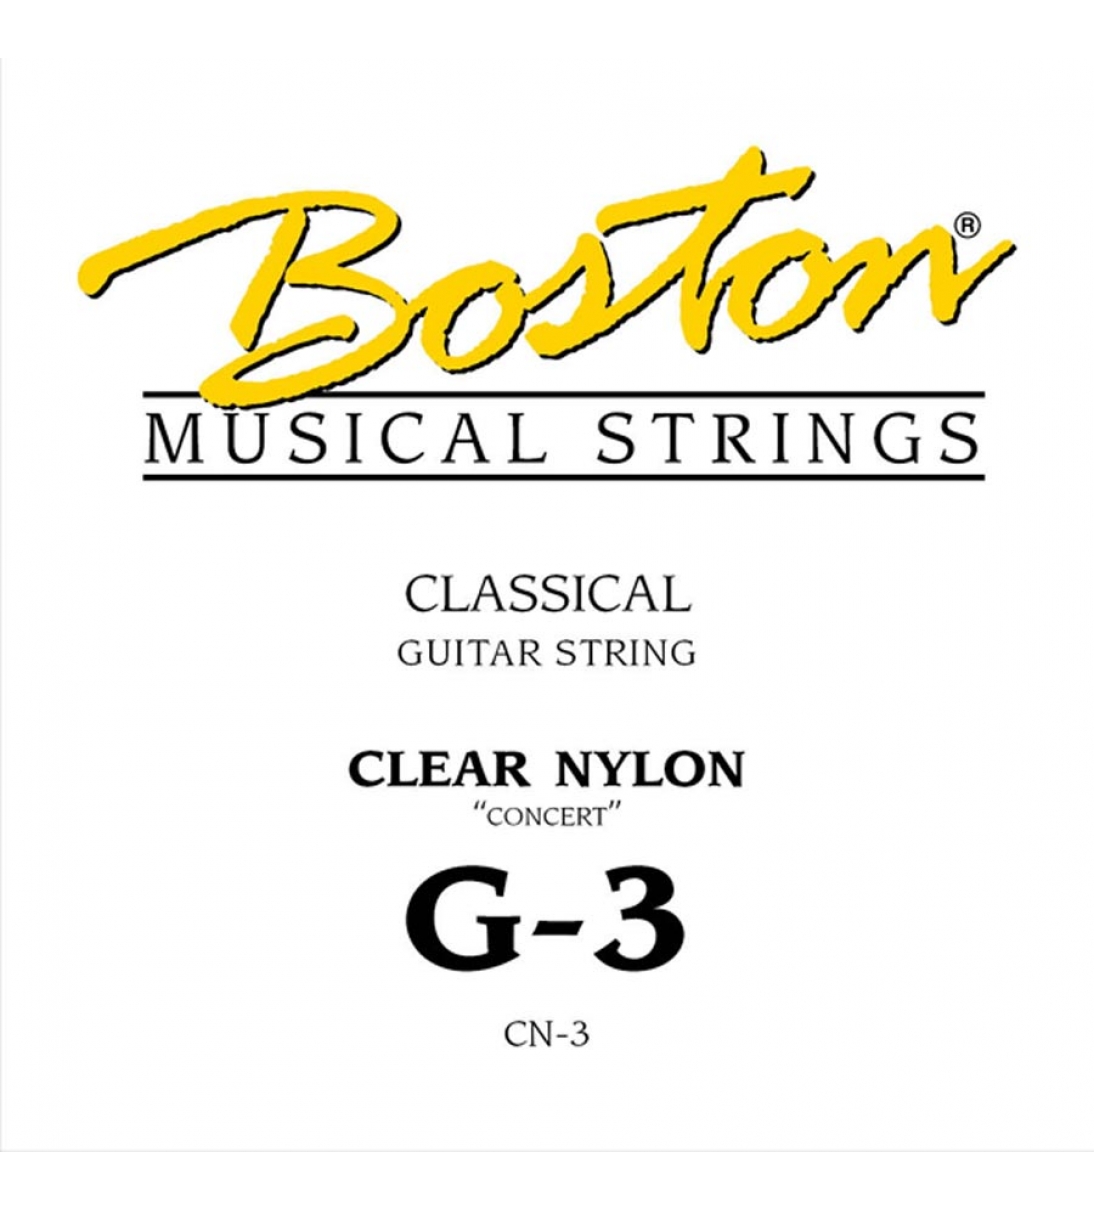 Corda singola per chitarra classica 3rd - G 